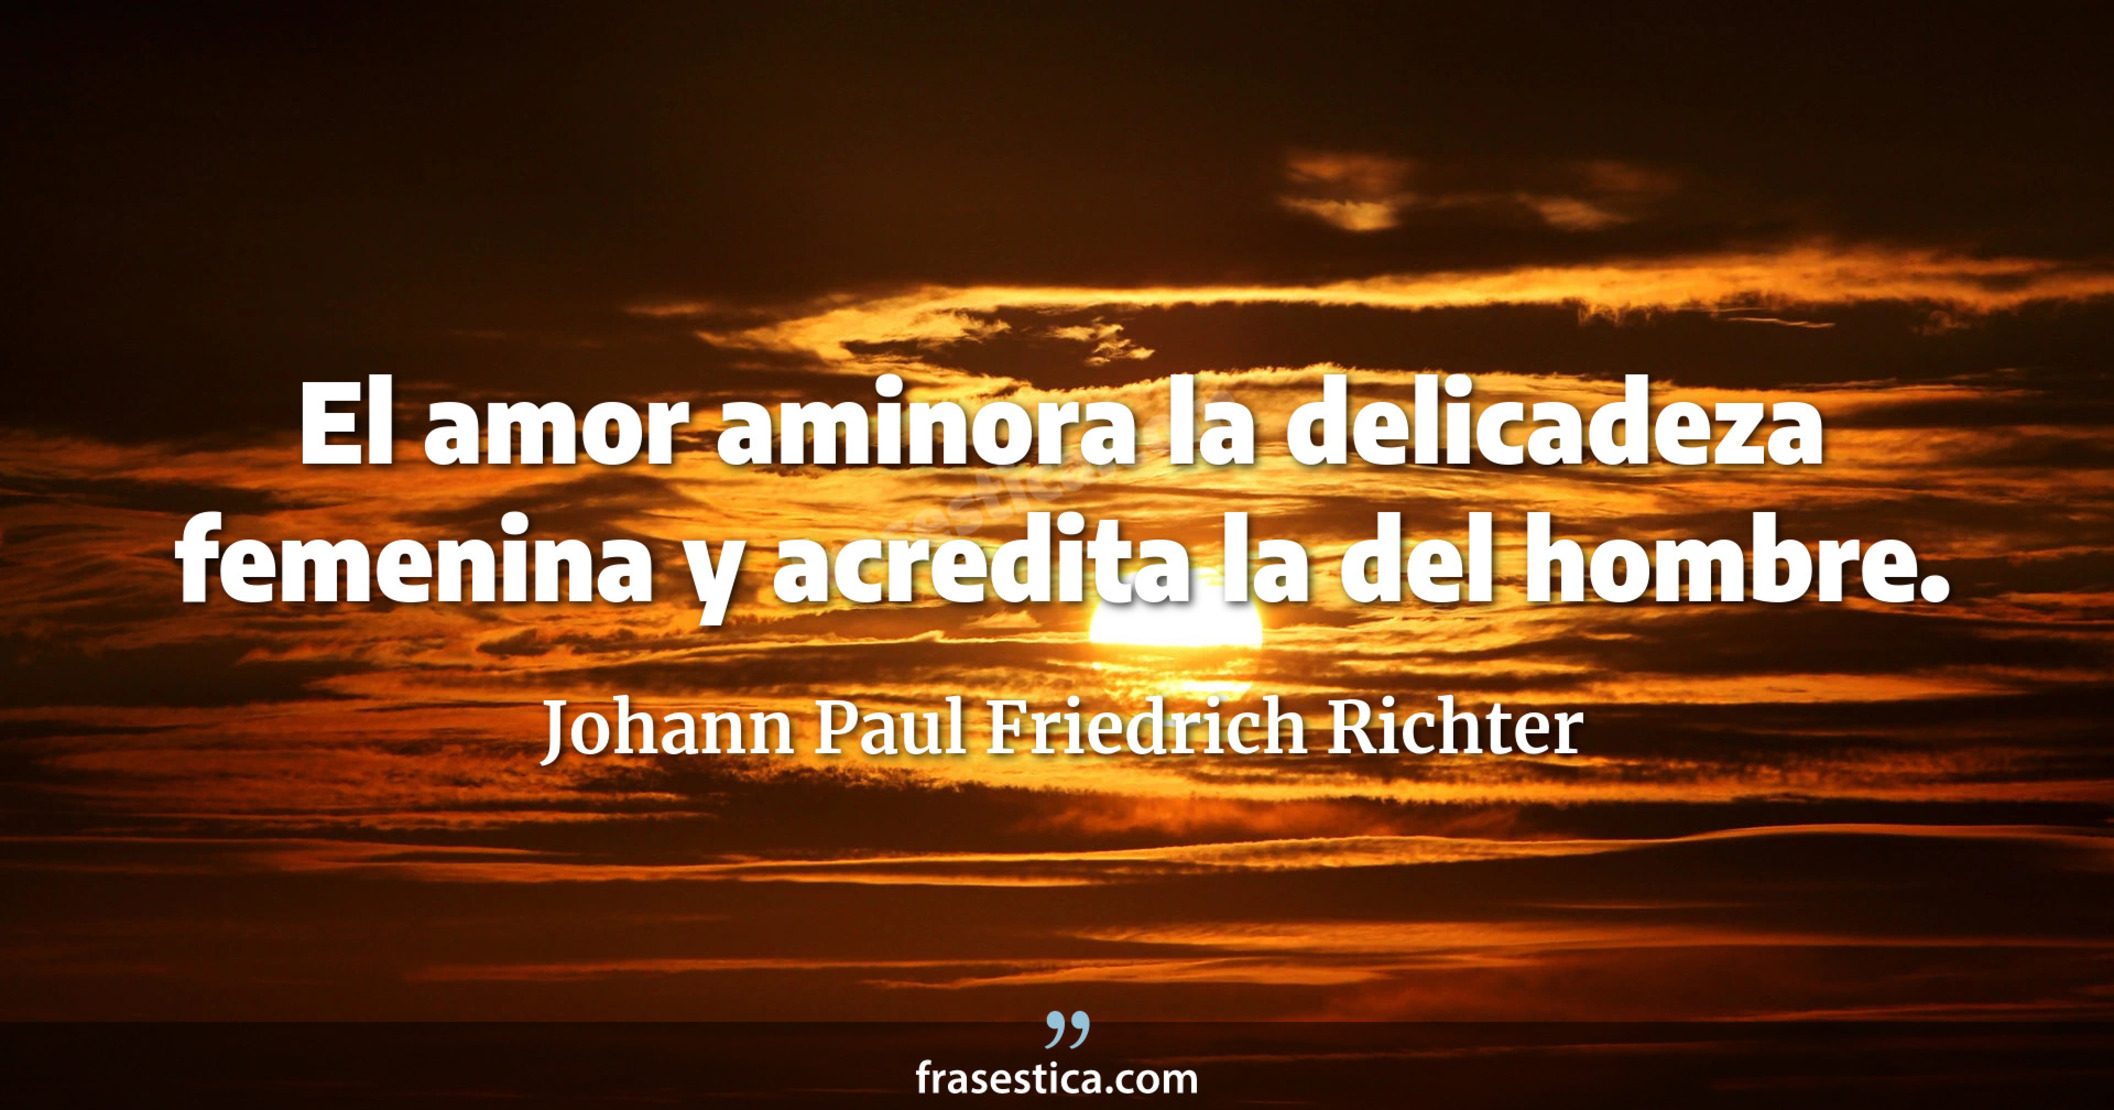 El amor aminora la delicadeza femenina y acredita la del hombre. - Johann Paul Friedrich Richter